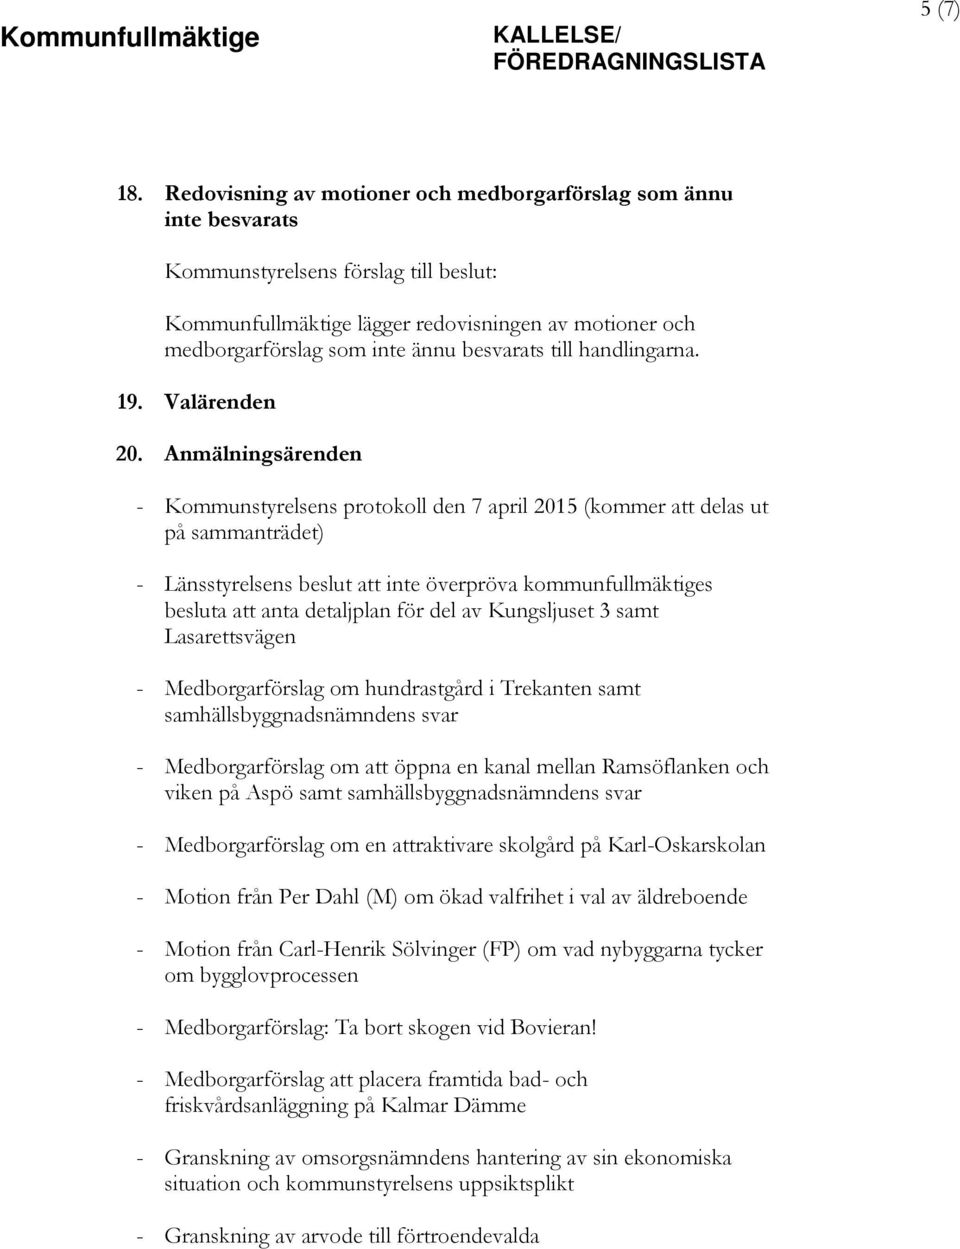 Anmälningsärenden - Kommunstyrelsens protokoll den 7 april 2015 (kommer att delas ut på sammanträdet) - Länsstyrelsens beslut att inte överpröva kommunfullmäktiges besluta att anta detaljplan för del